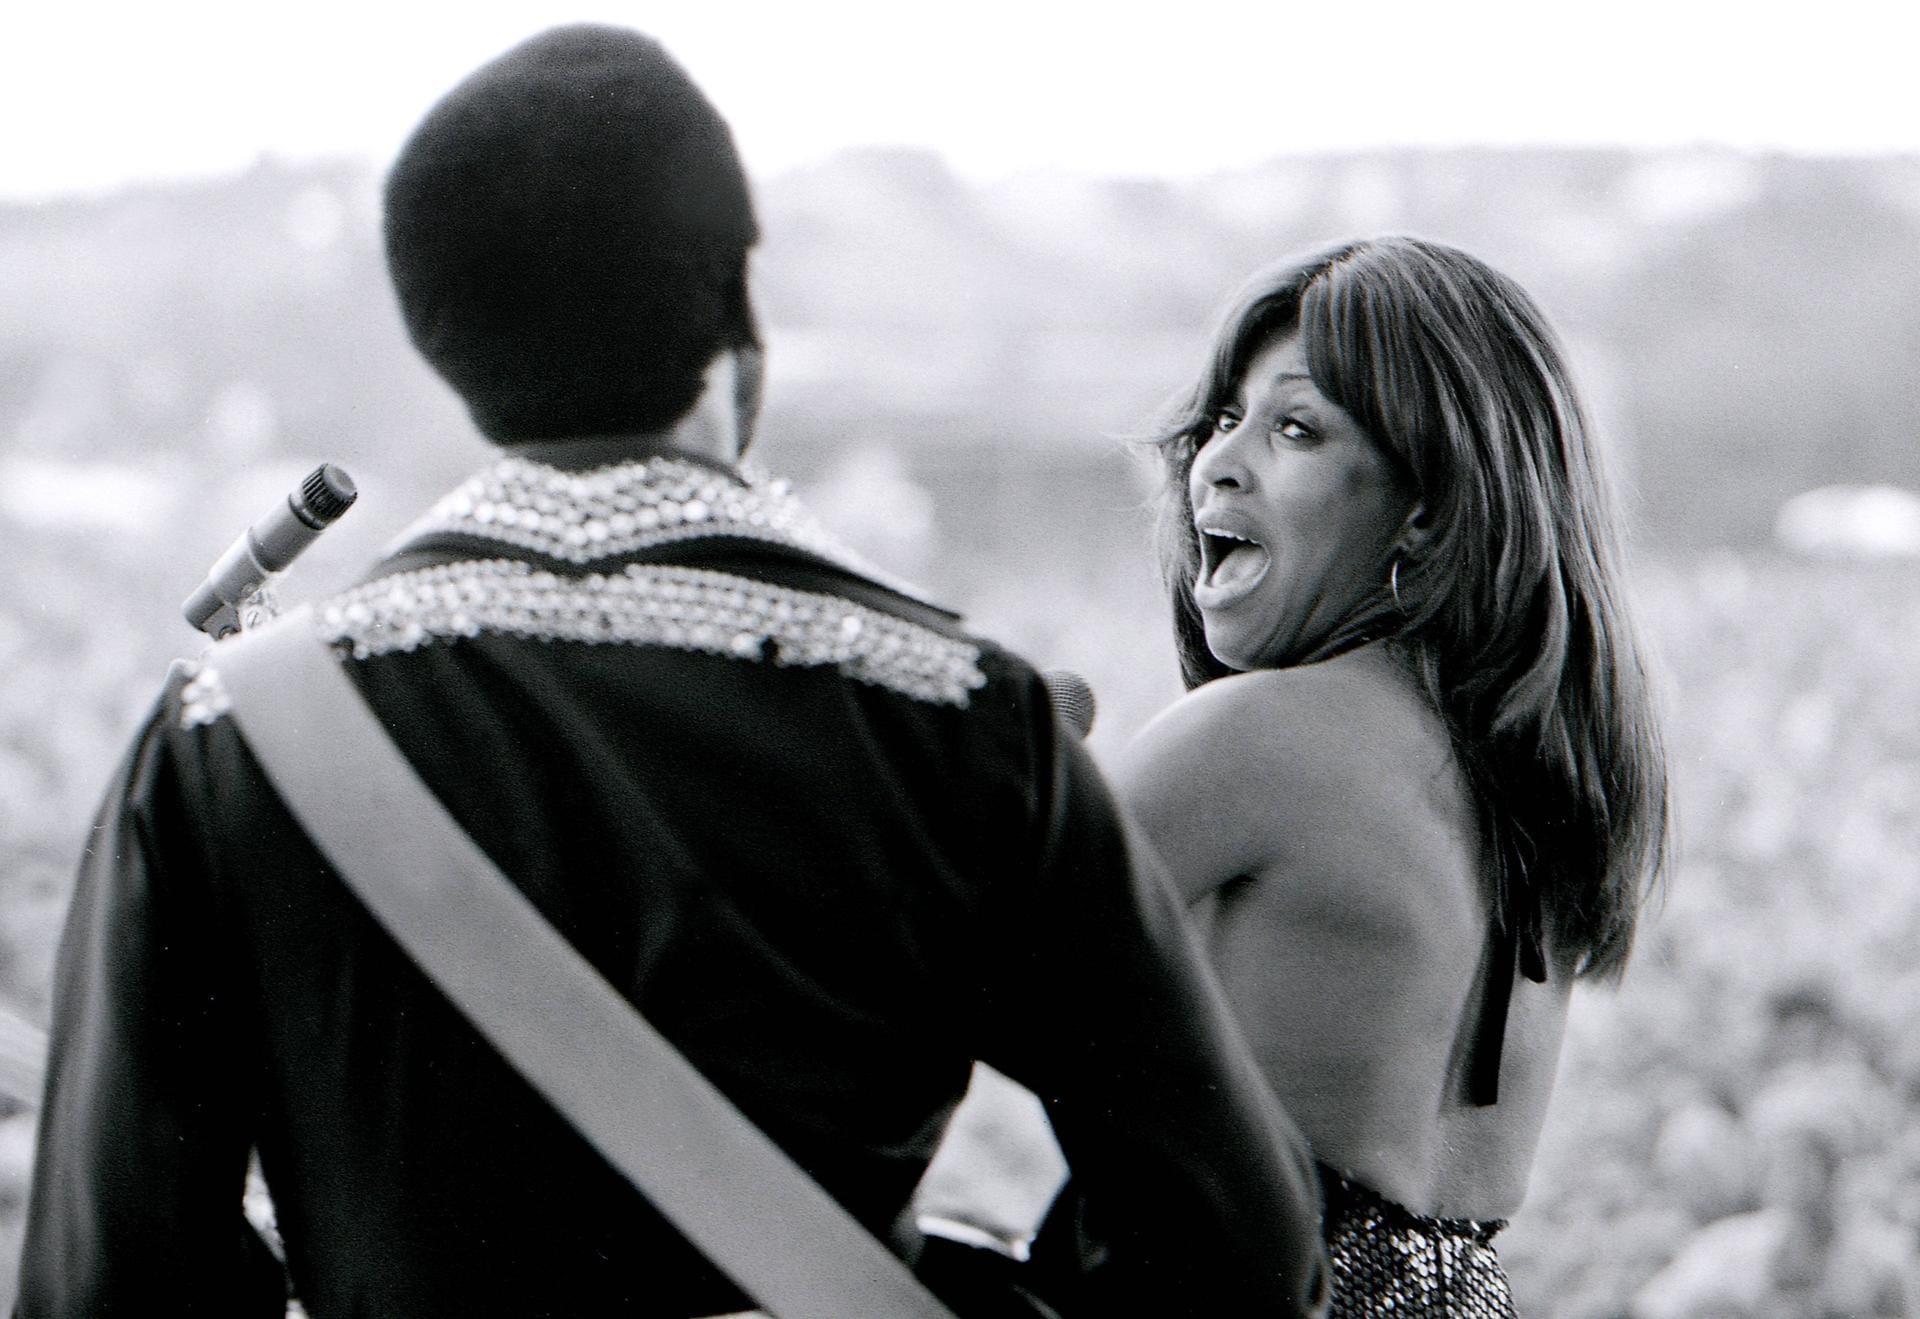 Ike & Tina Turner: Das Paar war in den Sechzigern und frühen Siebzigern als Duo erfolgreich. Ende der Siebziger verließ Tina Turner ihren Mann, der ihr gewalttätig war. 1978 wurde die Ehe geschieden. Die Sängerin feierte später als Solokünstlerin riesige Erfolge. Ike Turner starb 2007.